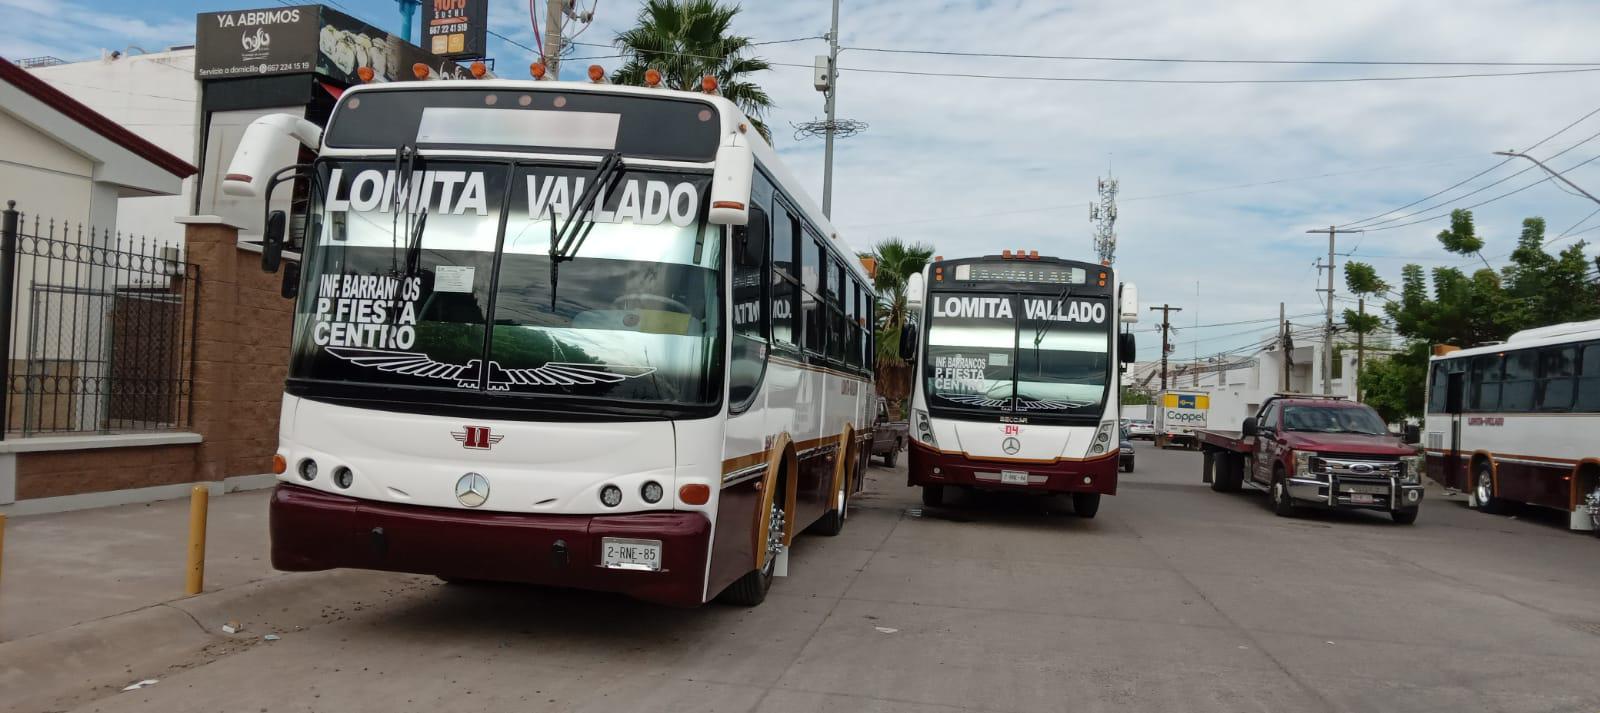 $!Reactivan ruta de transporte público Lomita-Vallado en Culiacán